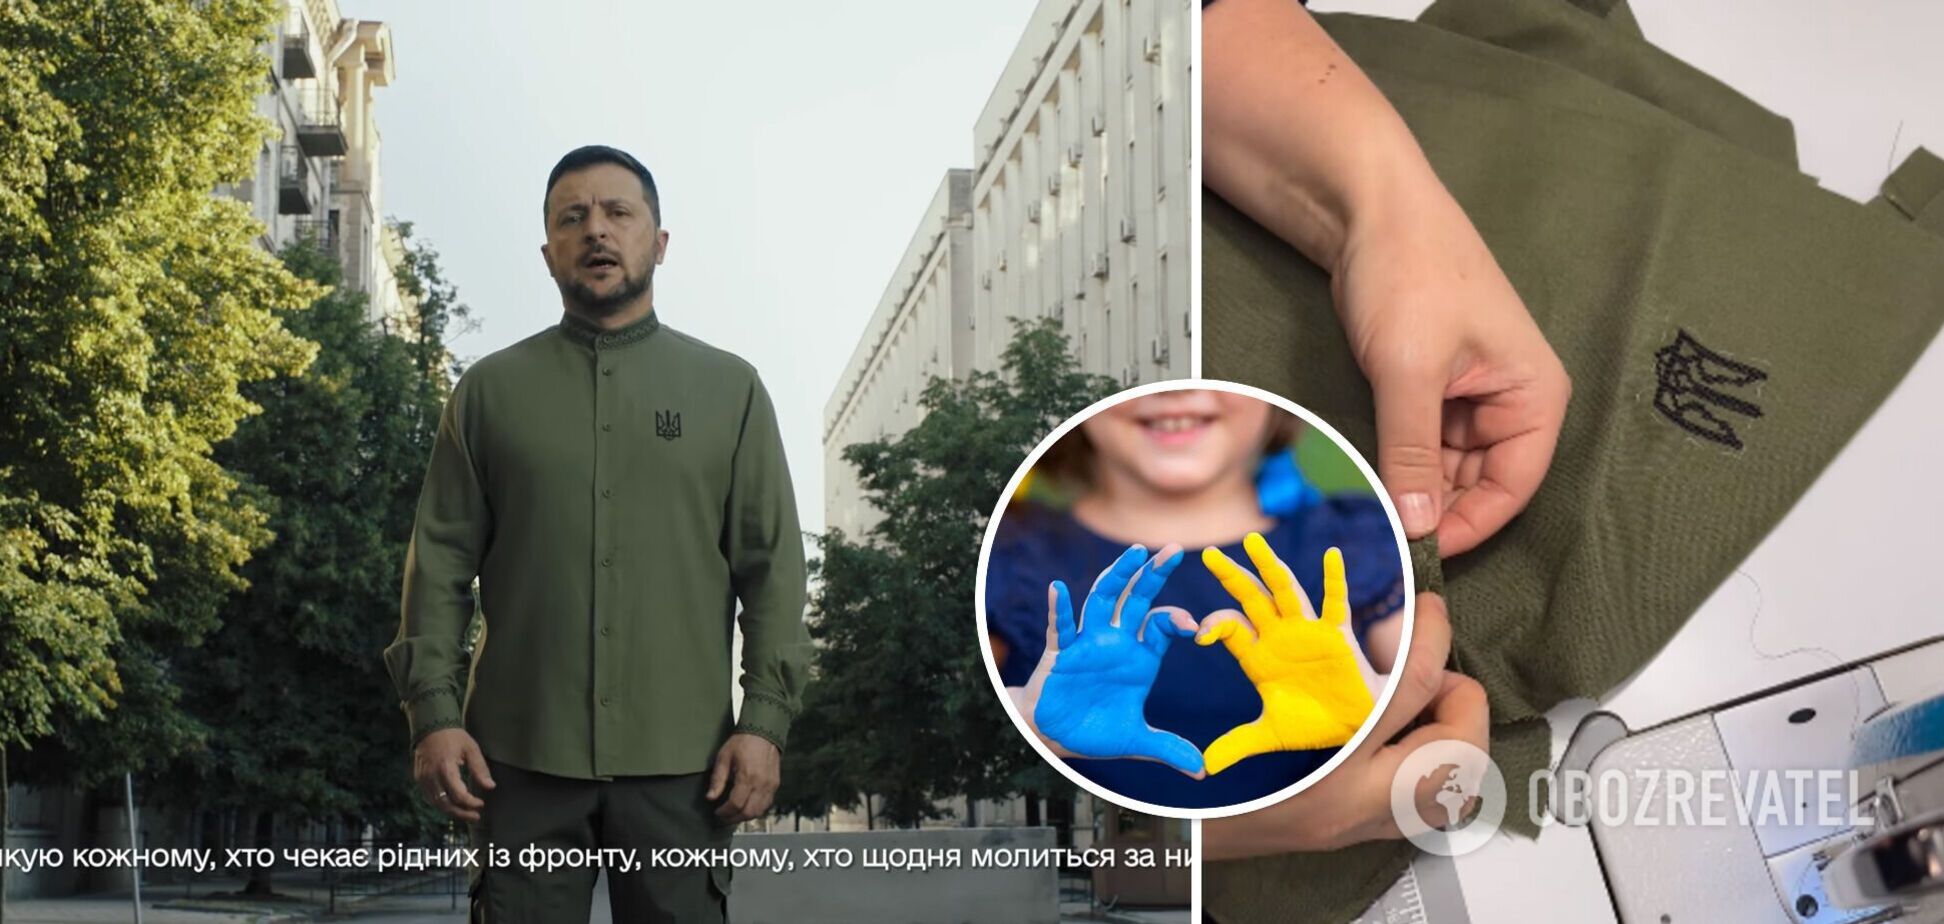 Зеленский поздравил украинцев с Днем Независимости в уникальной вышиванке цвета хаки: в чем ее особенность. Фото и видео